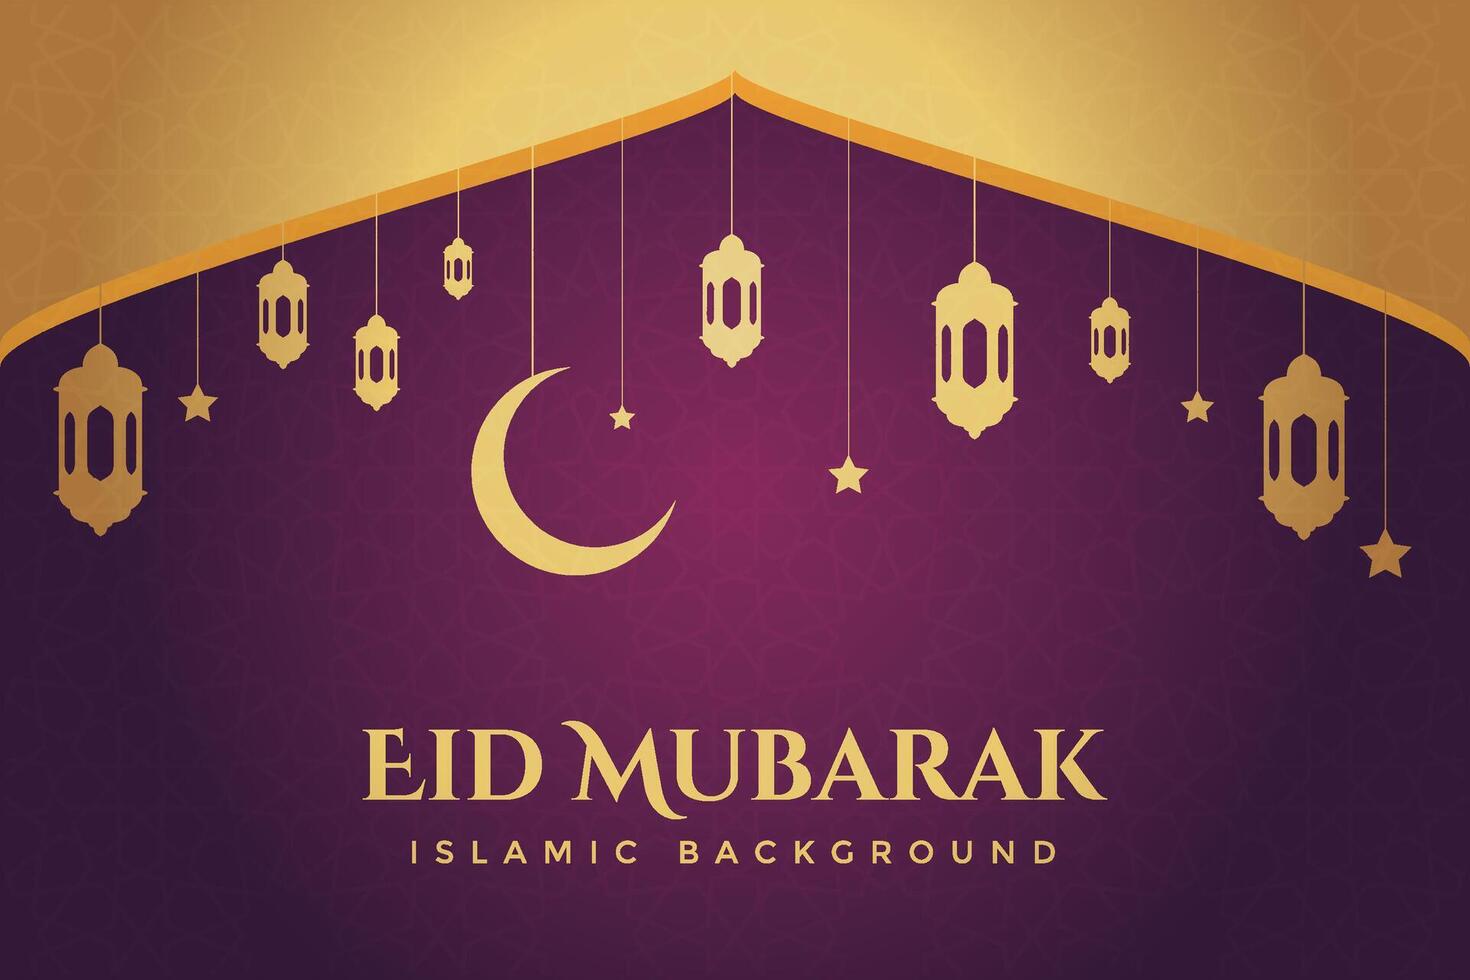 vector elegante lujoso ramadán, eid al fitr, islámico antecedentes decorativo saludo tarjeta